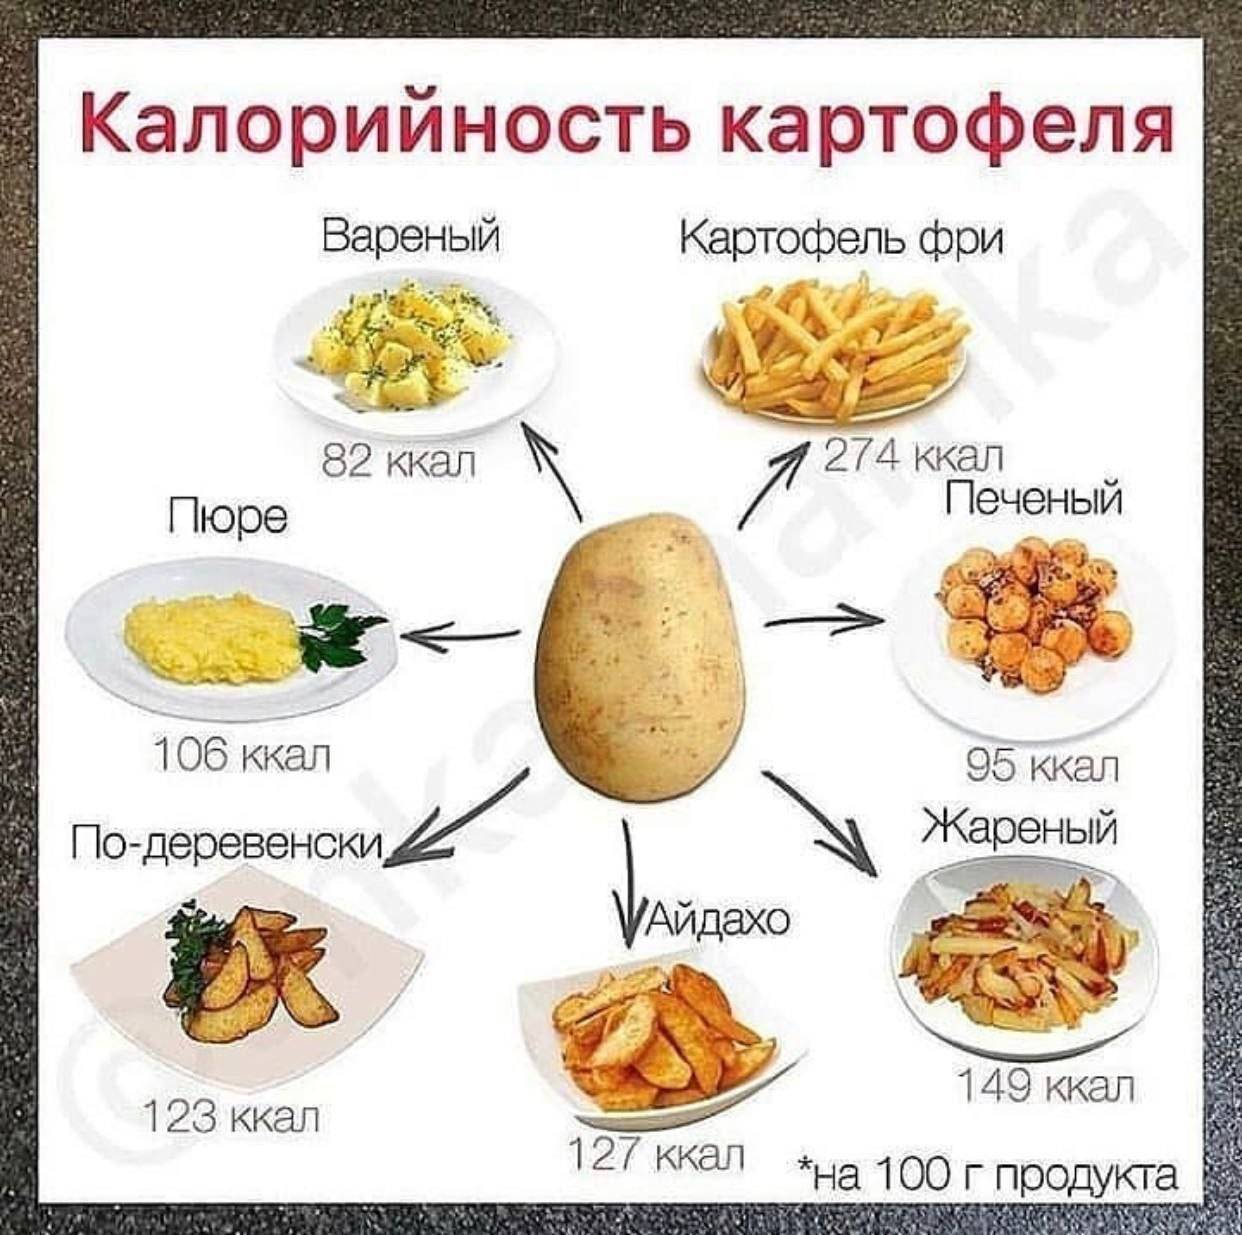 Калорийность картофеля на сто грамм продукта